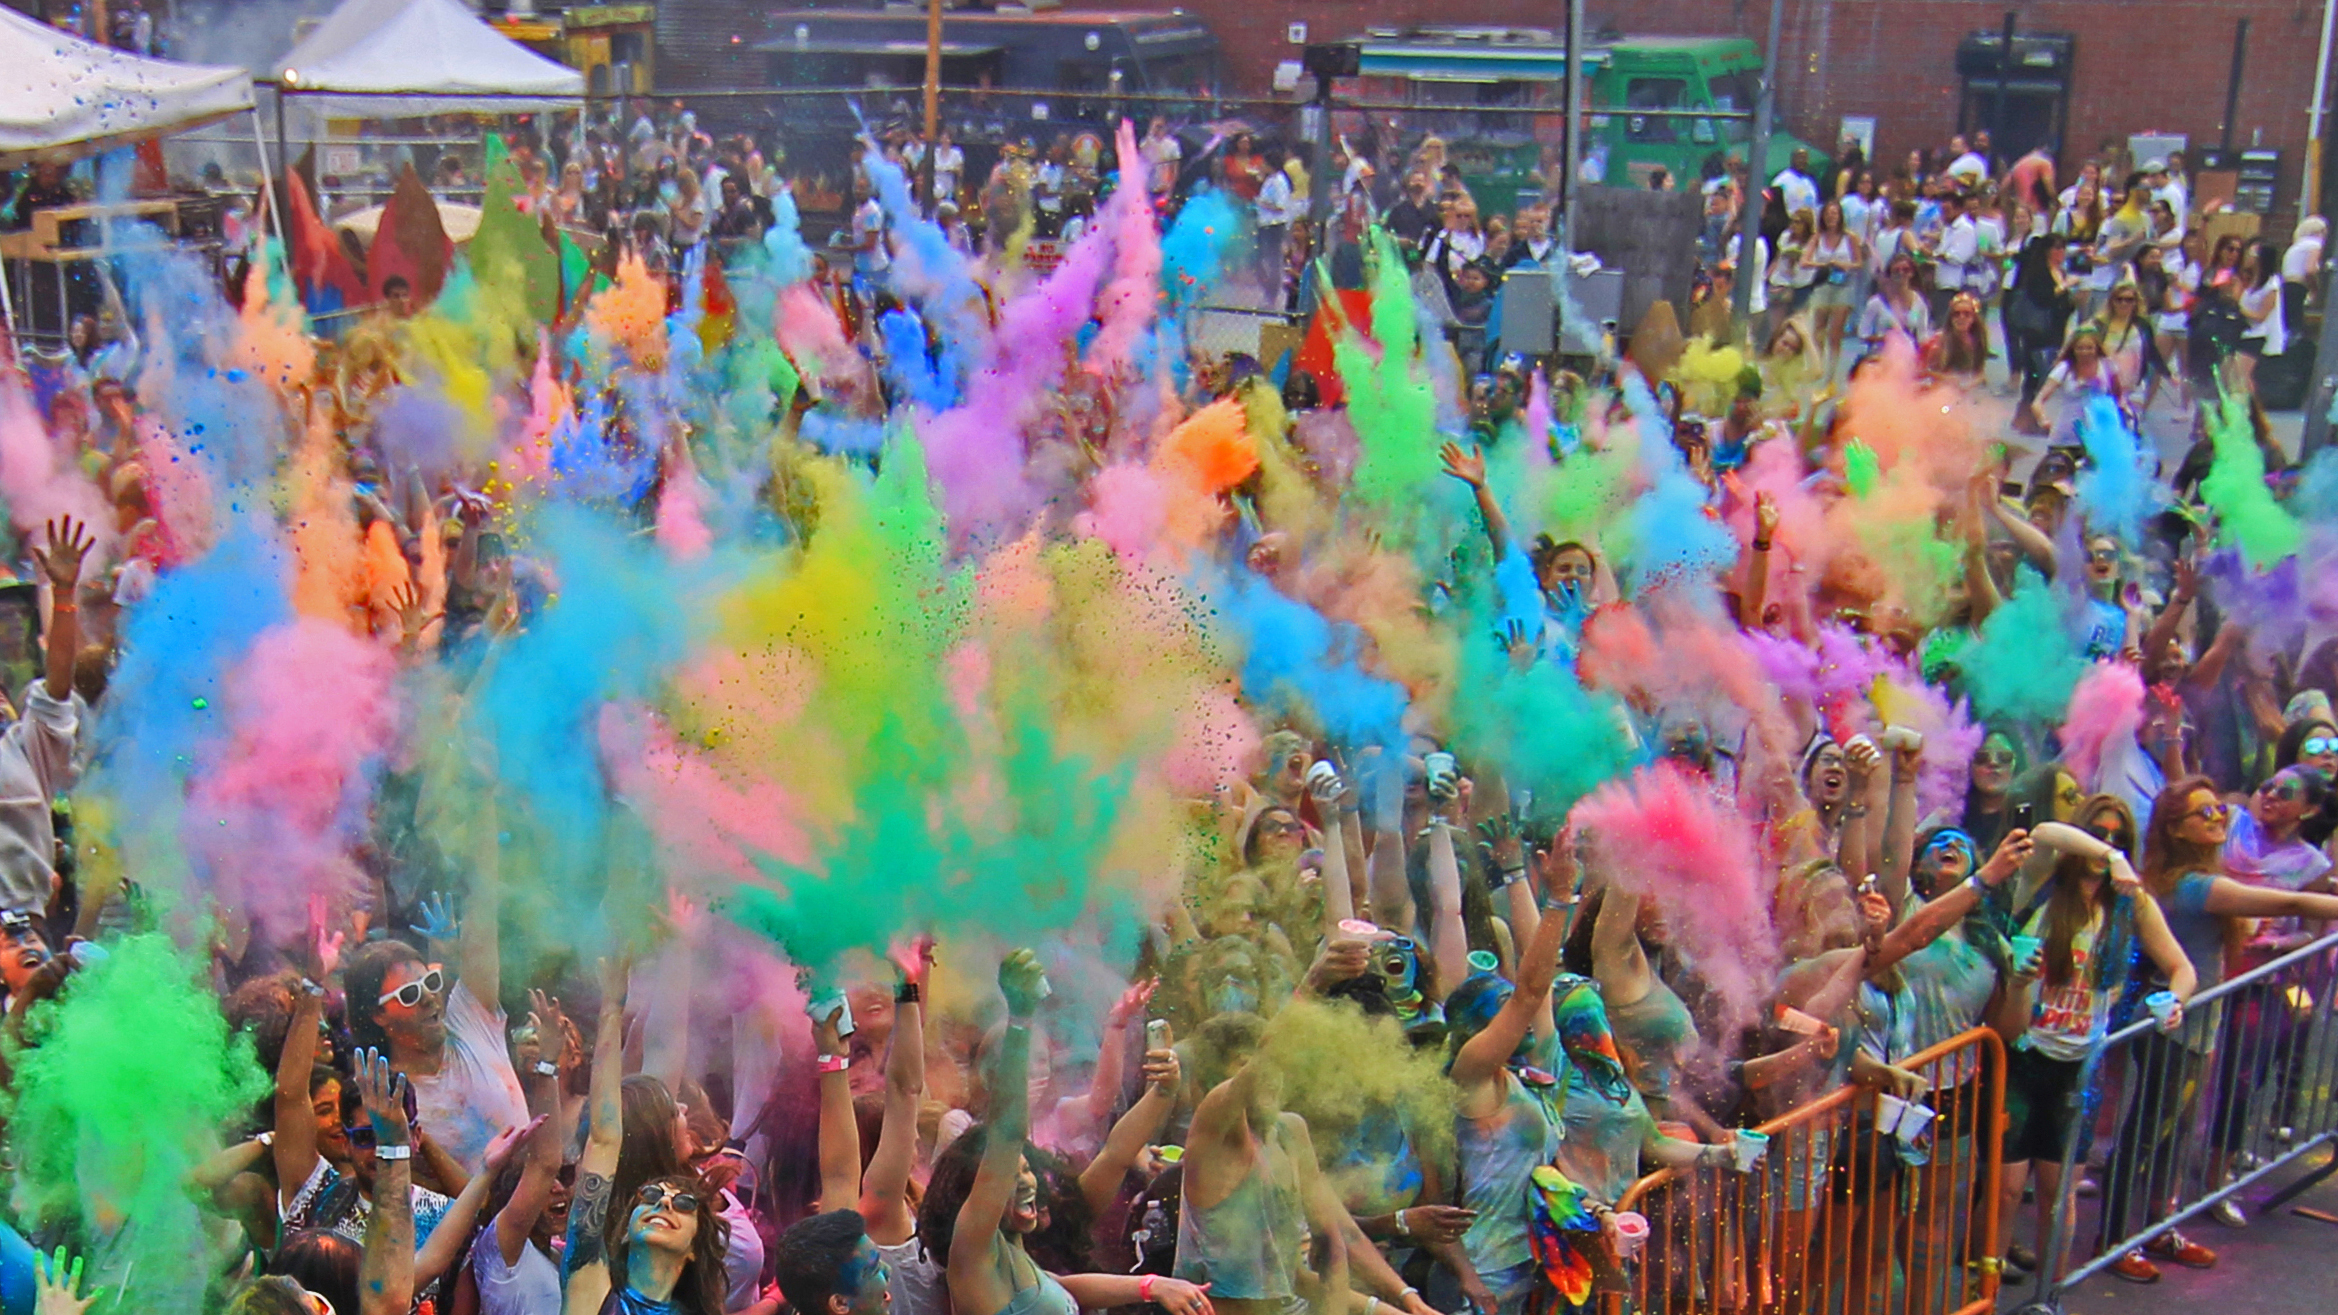 Holi: Festival of Colors